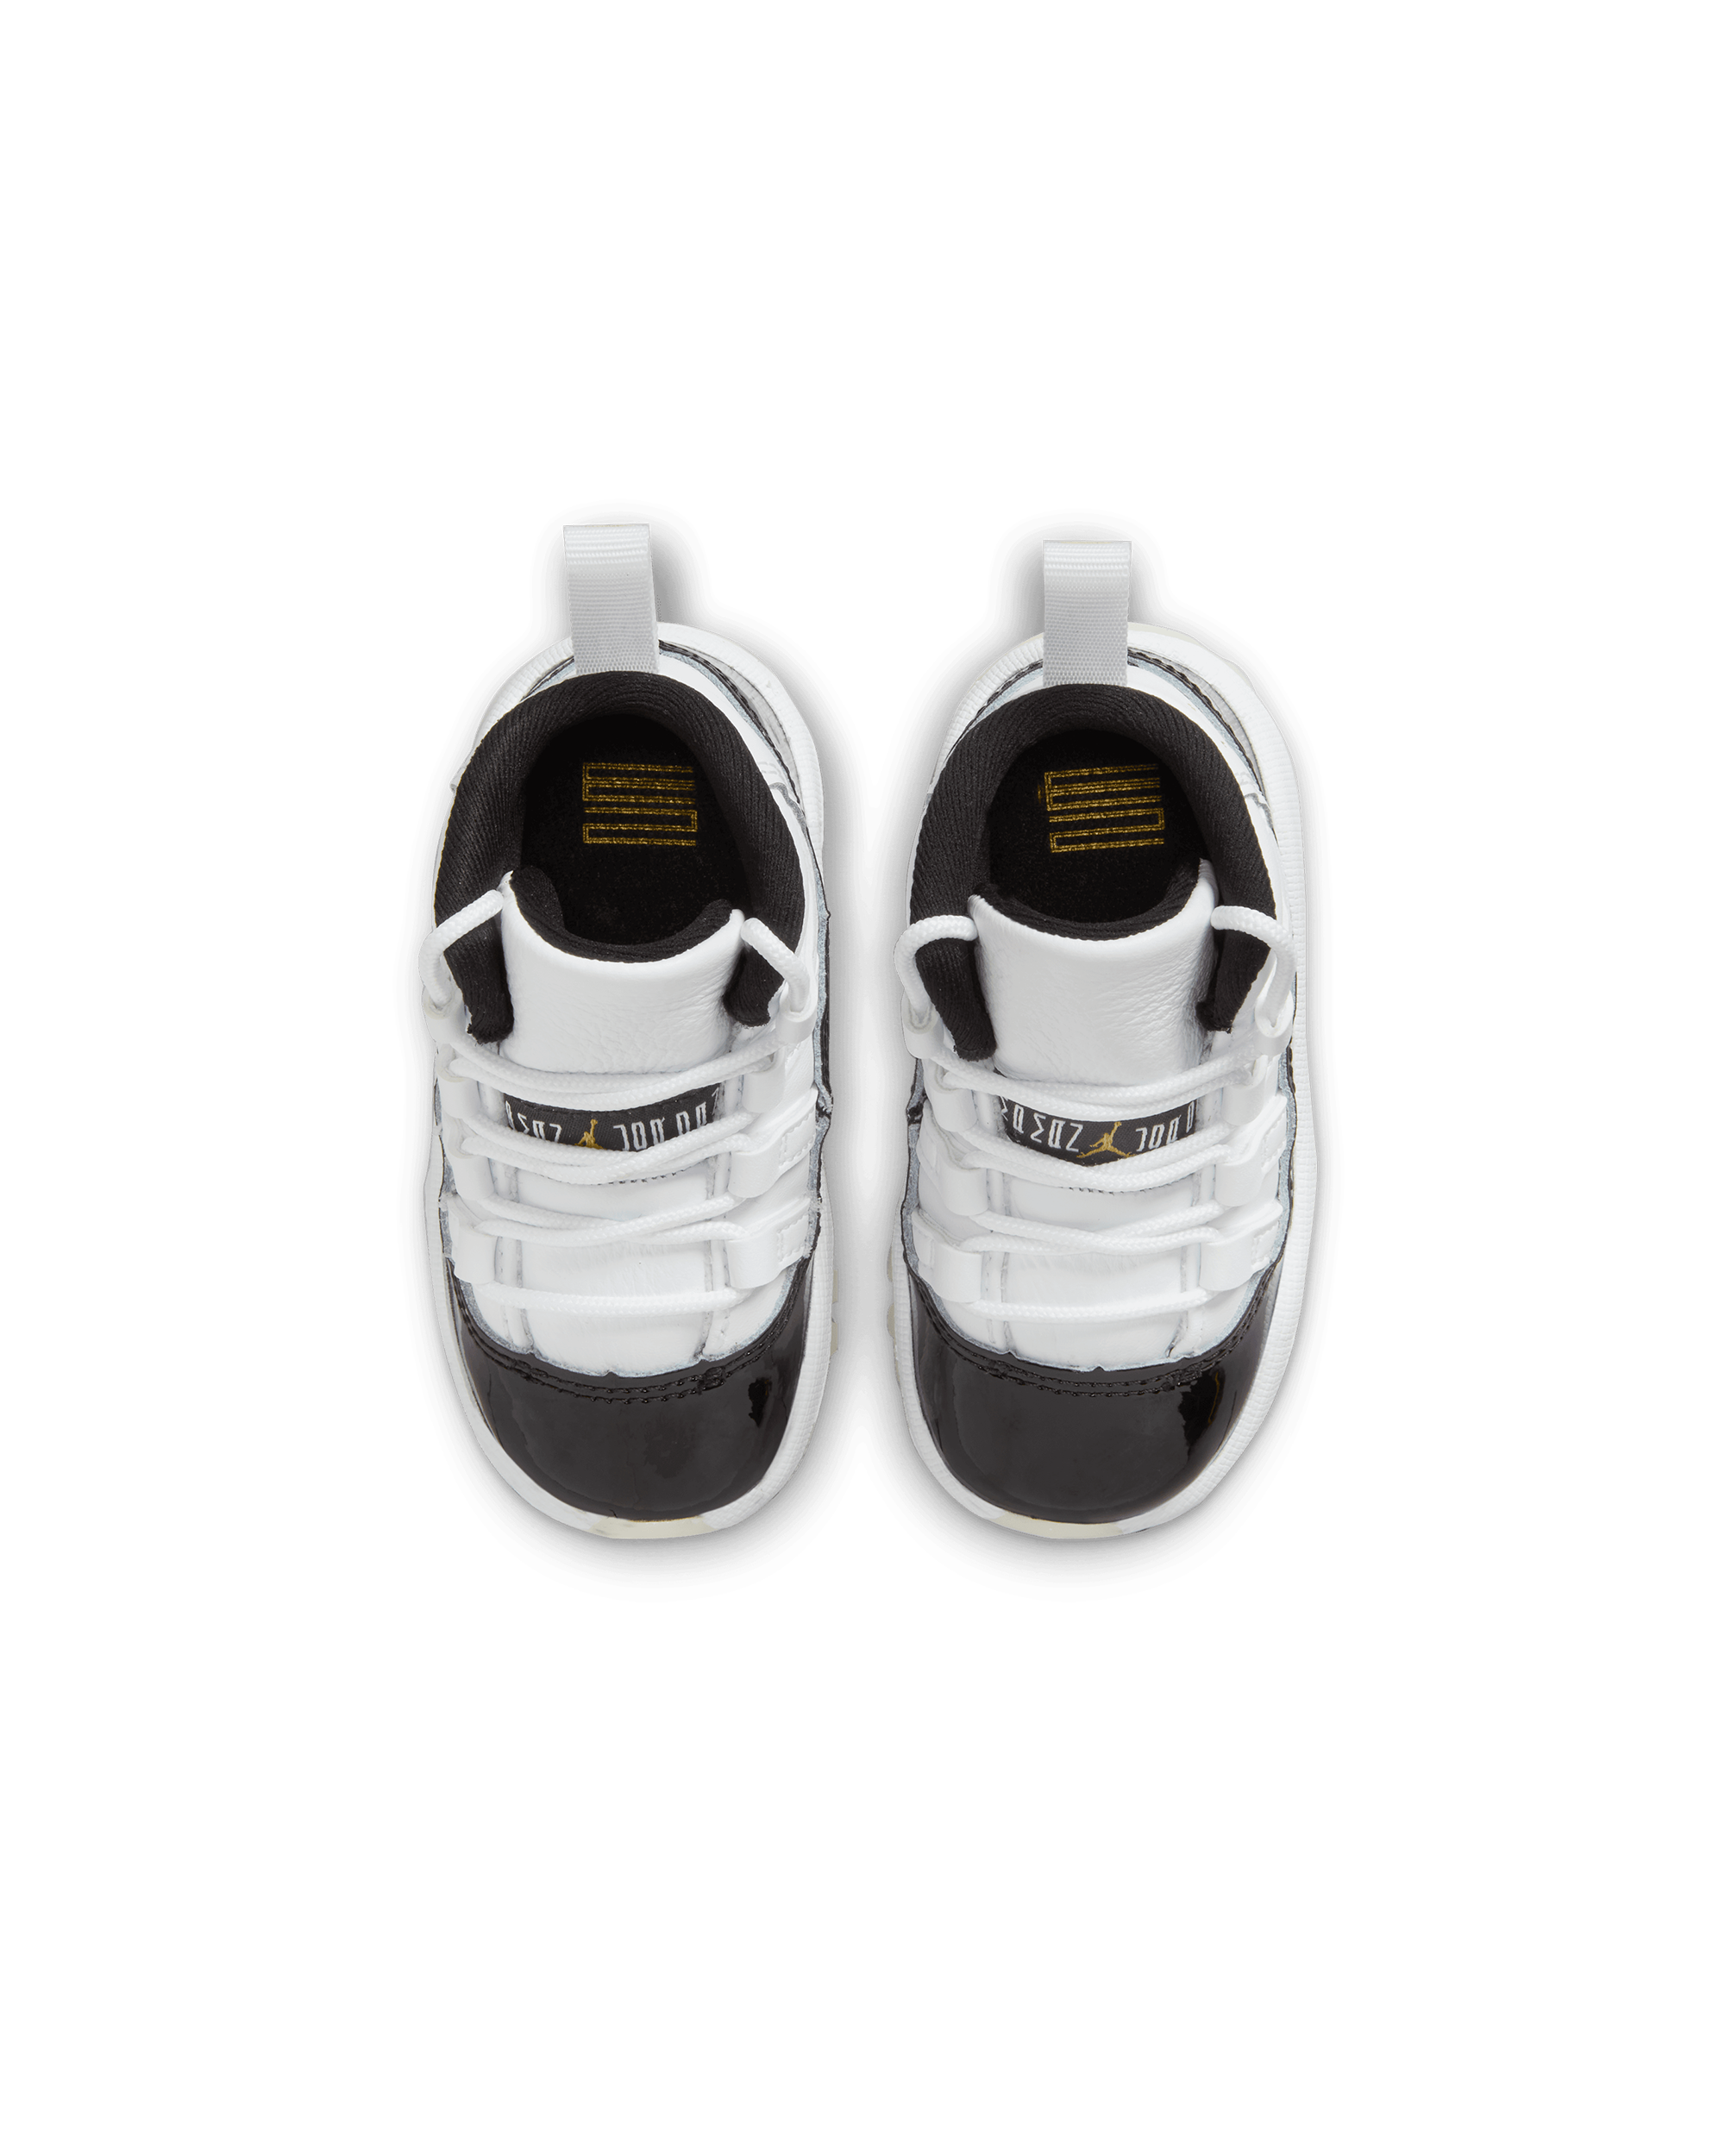 Jordan 11 Retro Toddler - White / Metallic Gold-Black